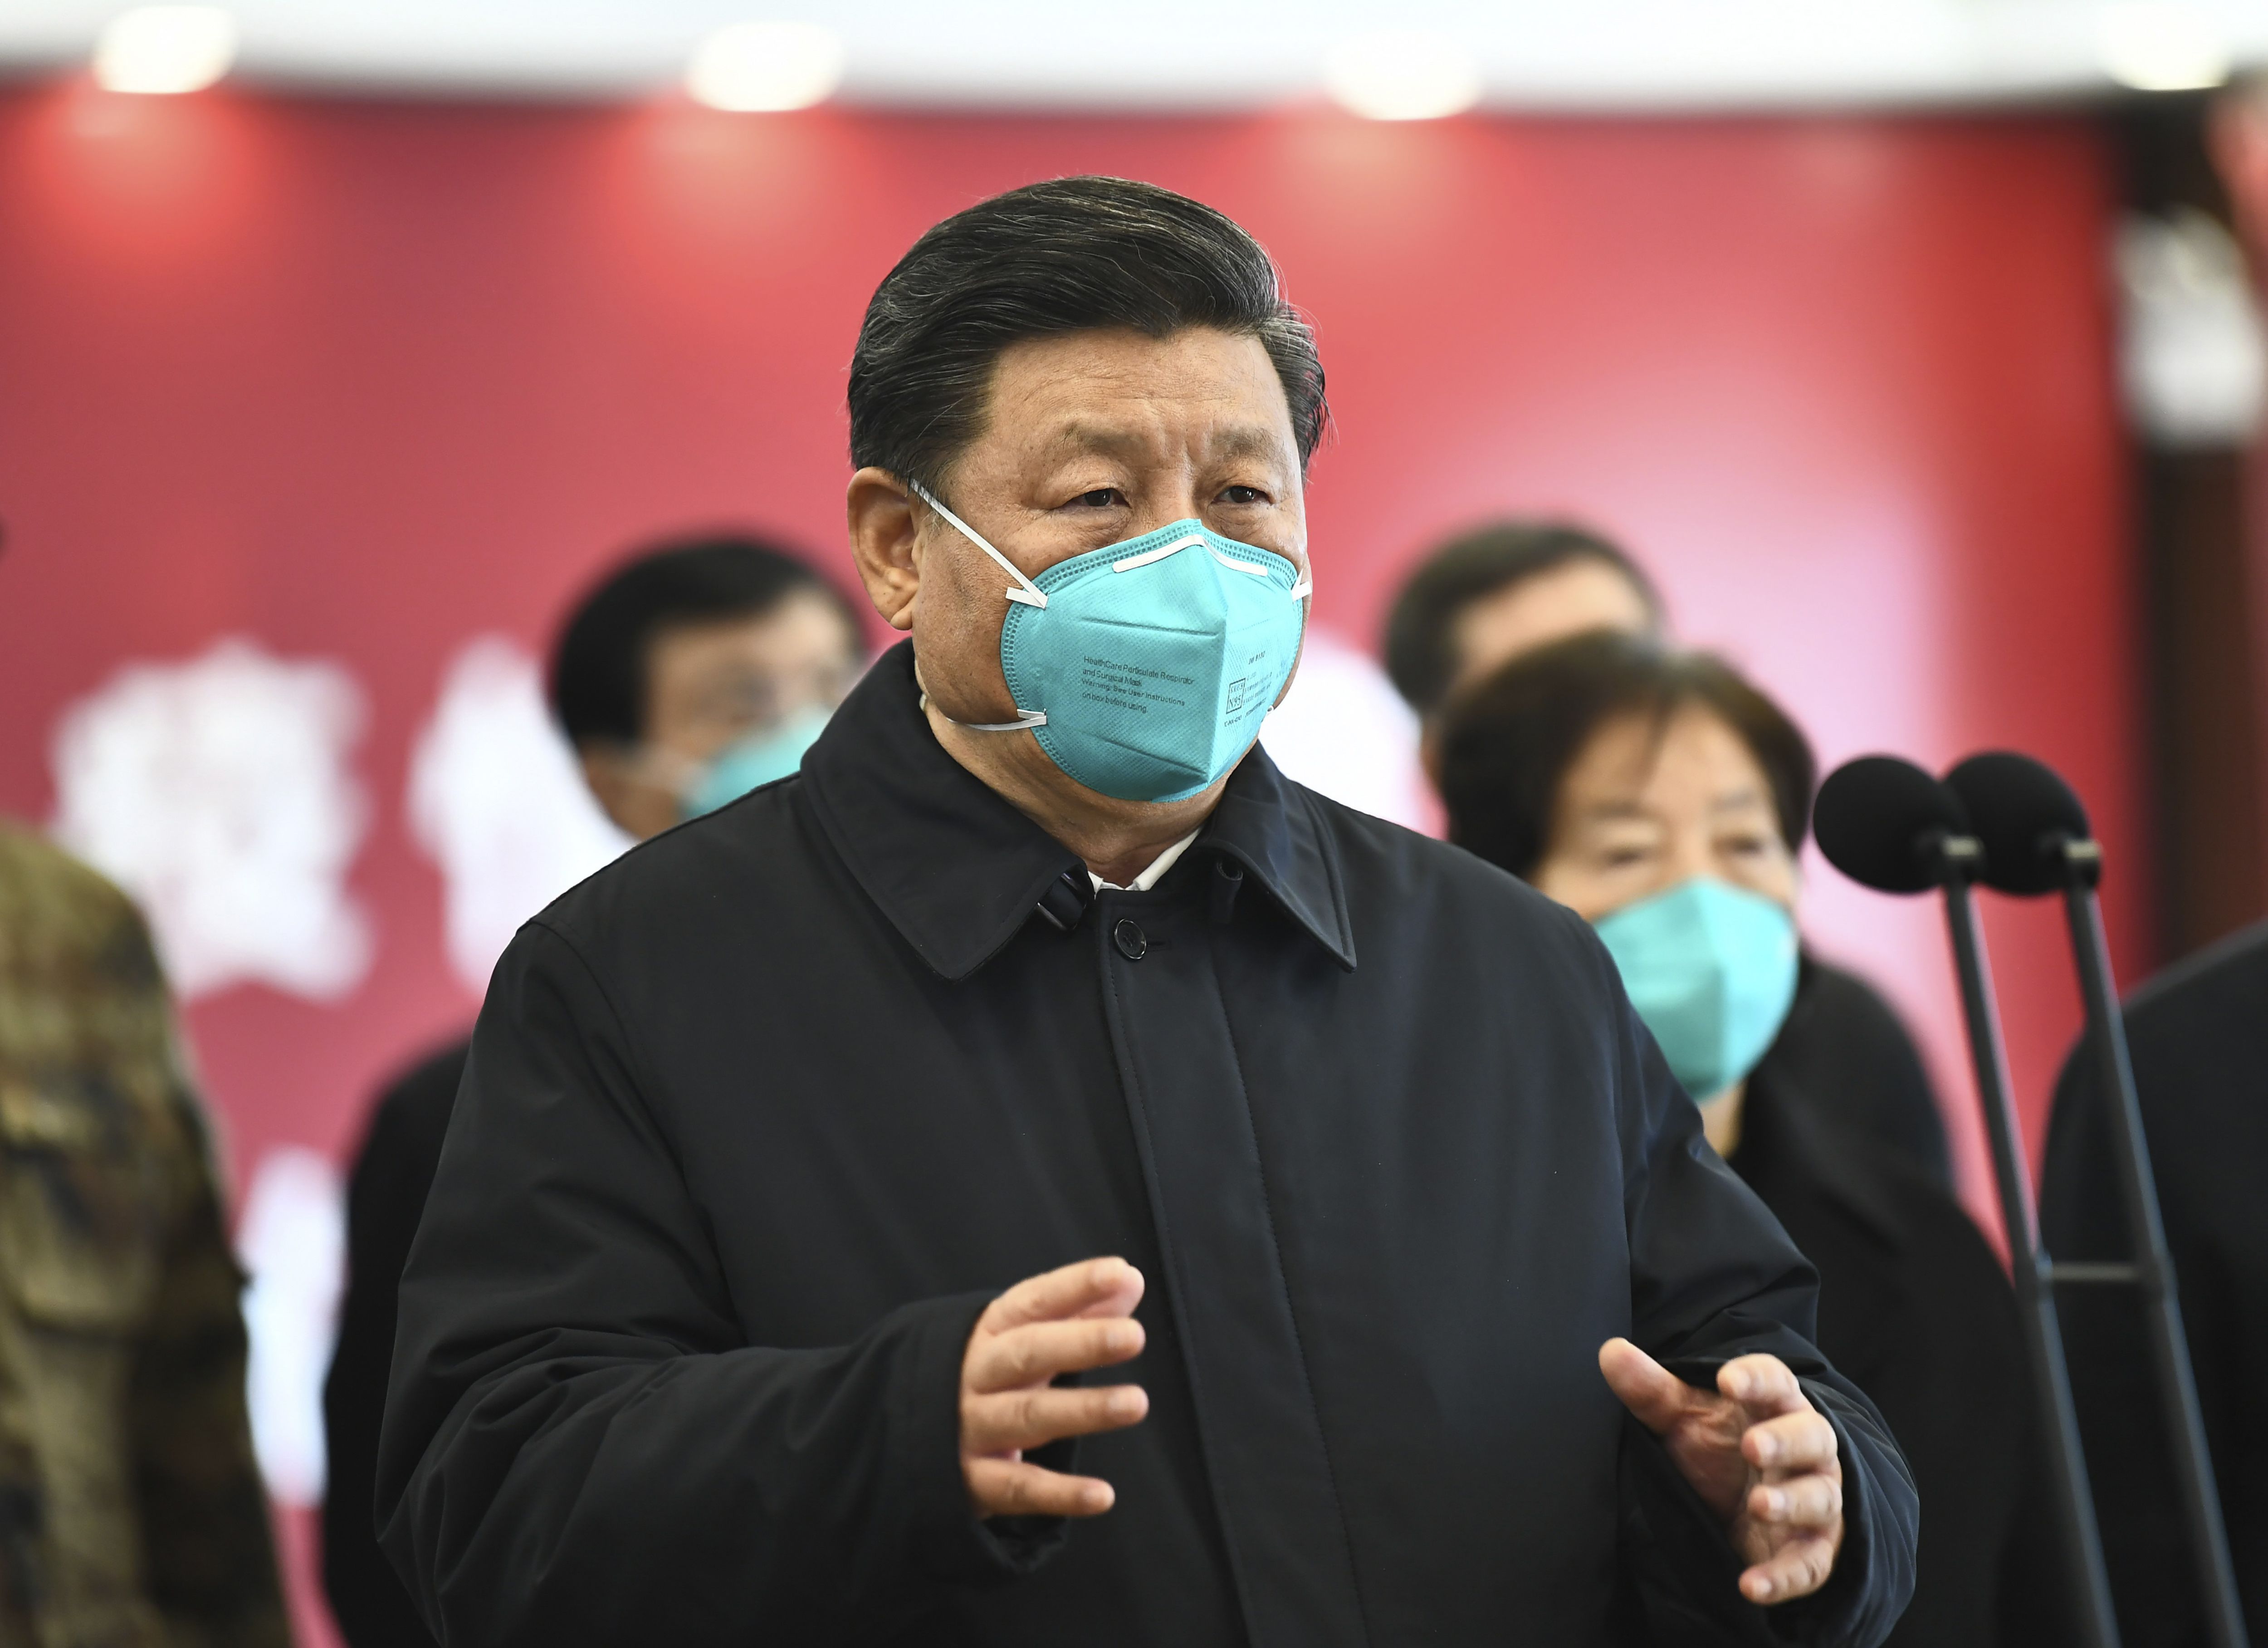 El jefe del régimen chino, Xi Jinping, durante una visita virtual a pacientes de COVID-19 en marzo de 2019, cuando la pandemia ya había traspasado las fronteras de China. Beijing quiere imponer una nueva narrativa y sacar a Wuhan como epicentro del brote epidemiológico (AP)